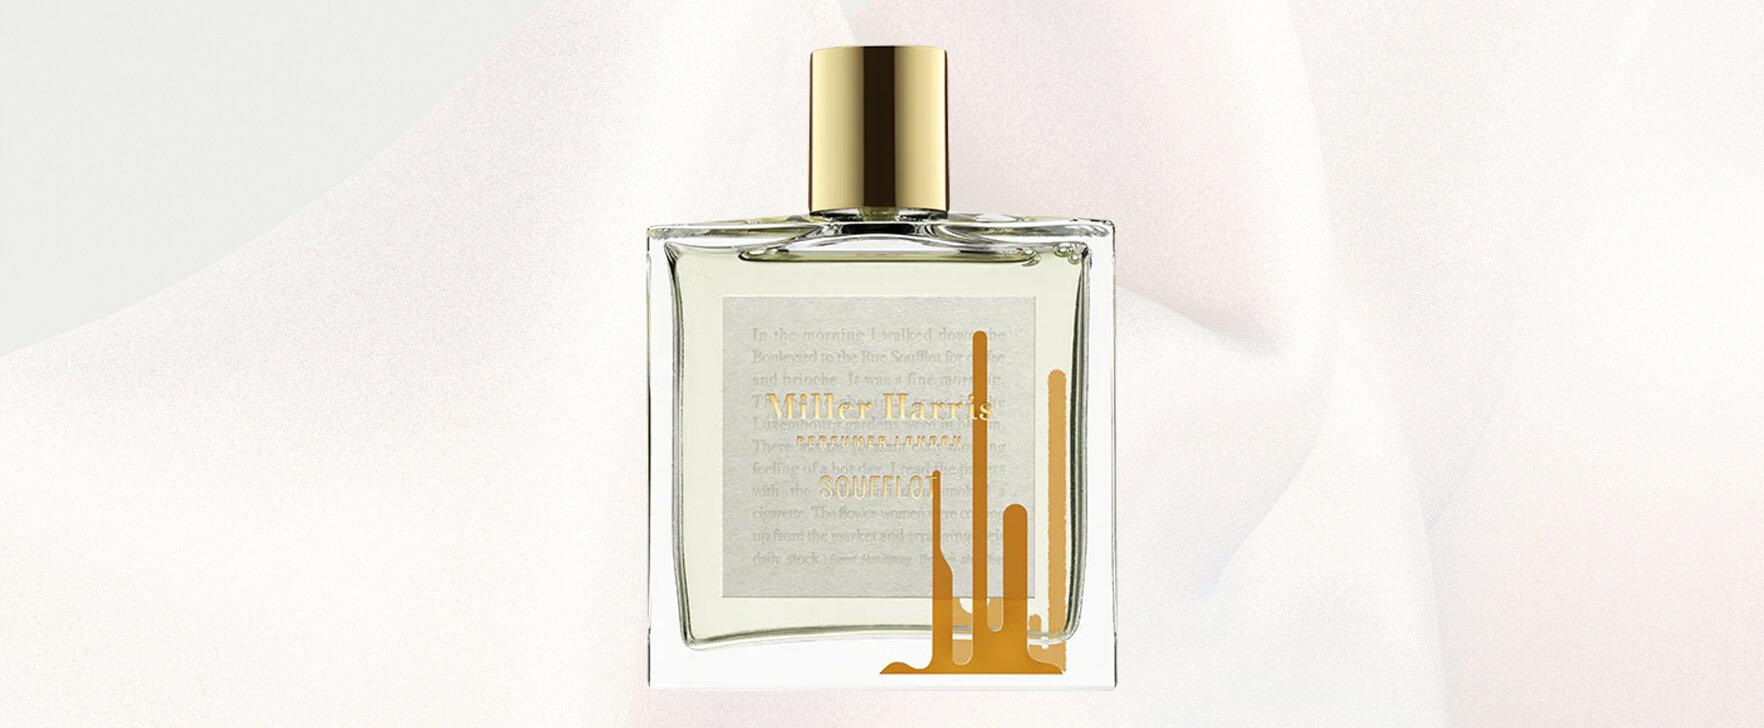 Morgendliche Duftreise durch Paris:  Das neue Eau de Parfum „Soufflot“ von Miller Harris